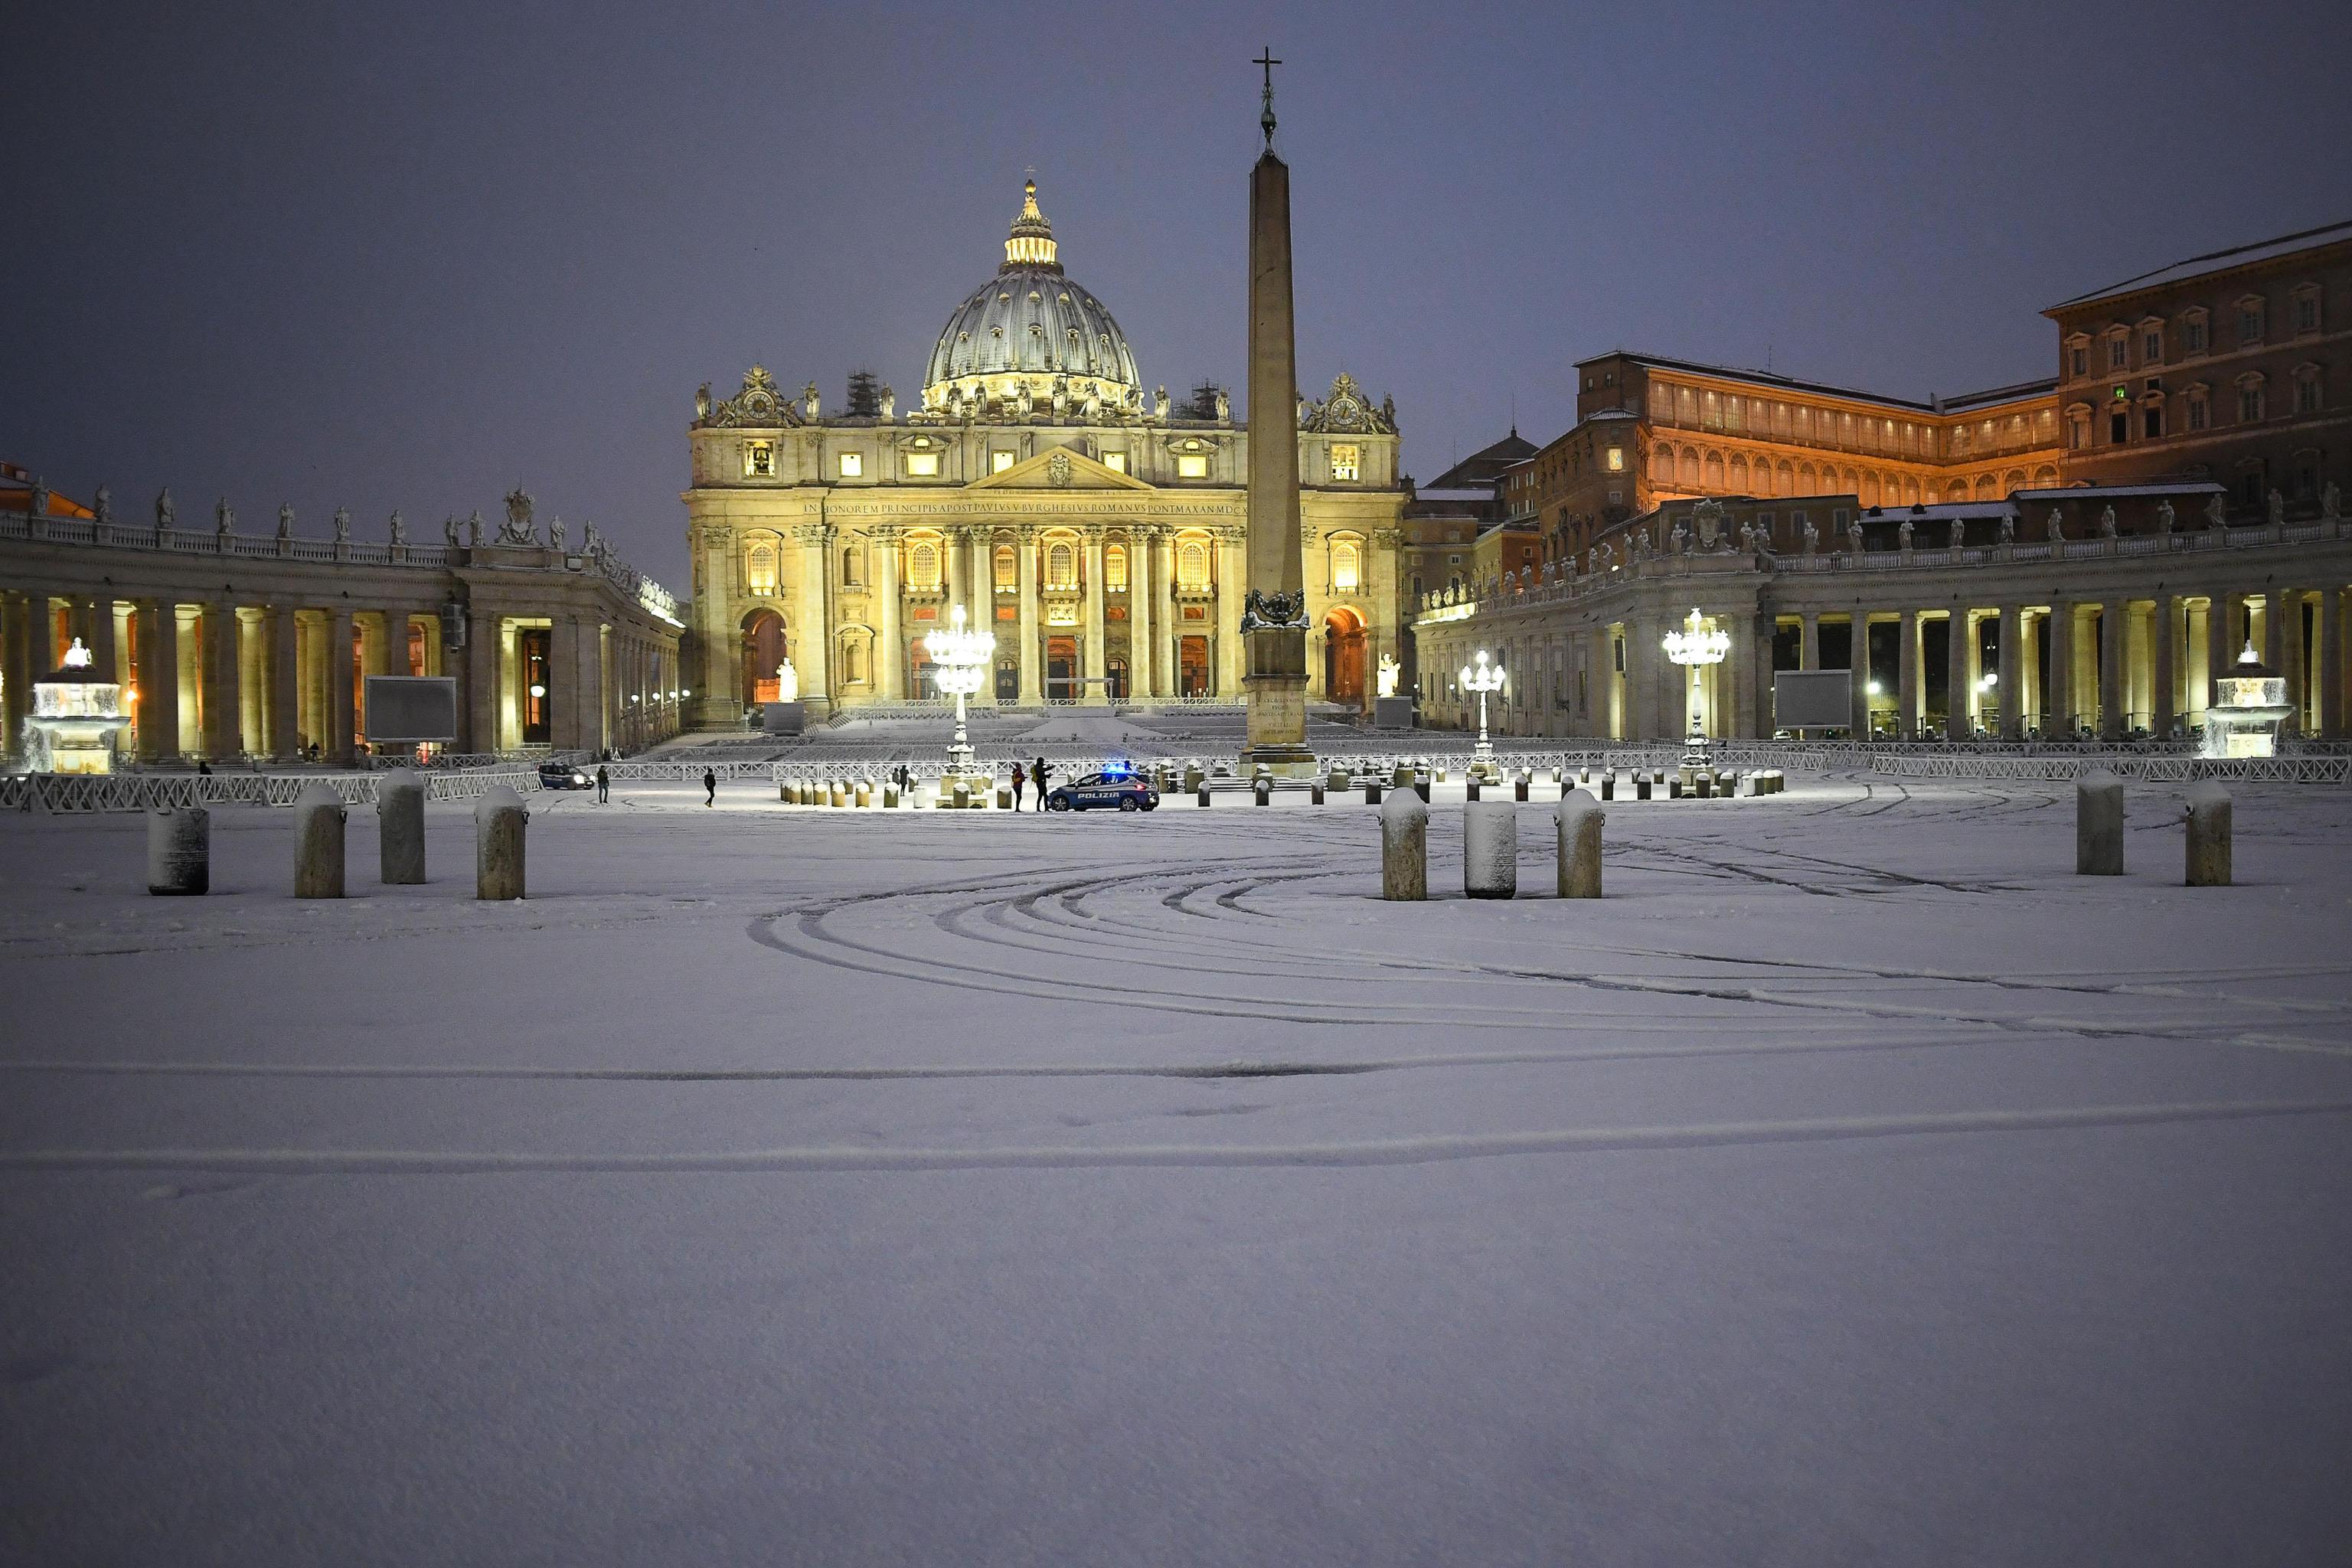 Nevicata all'alba in piazza San Pietro, Roma, 26 febbraio 2018.
ANSA/ALESSANDRO DI MEO